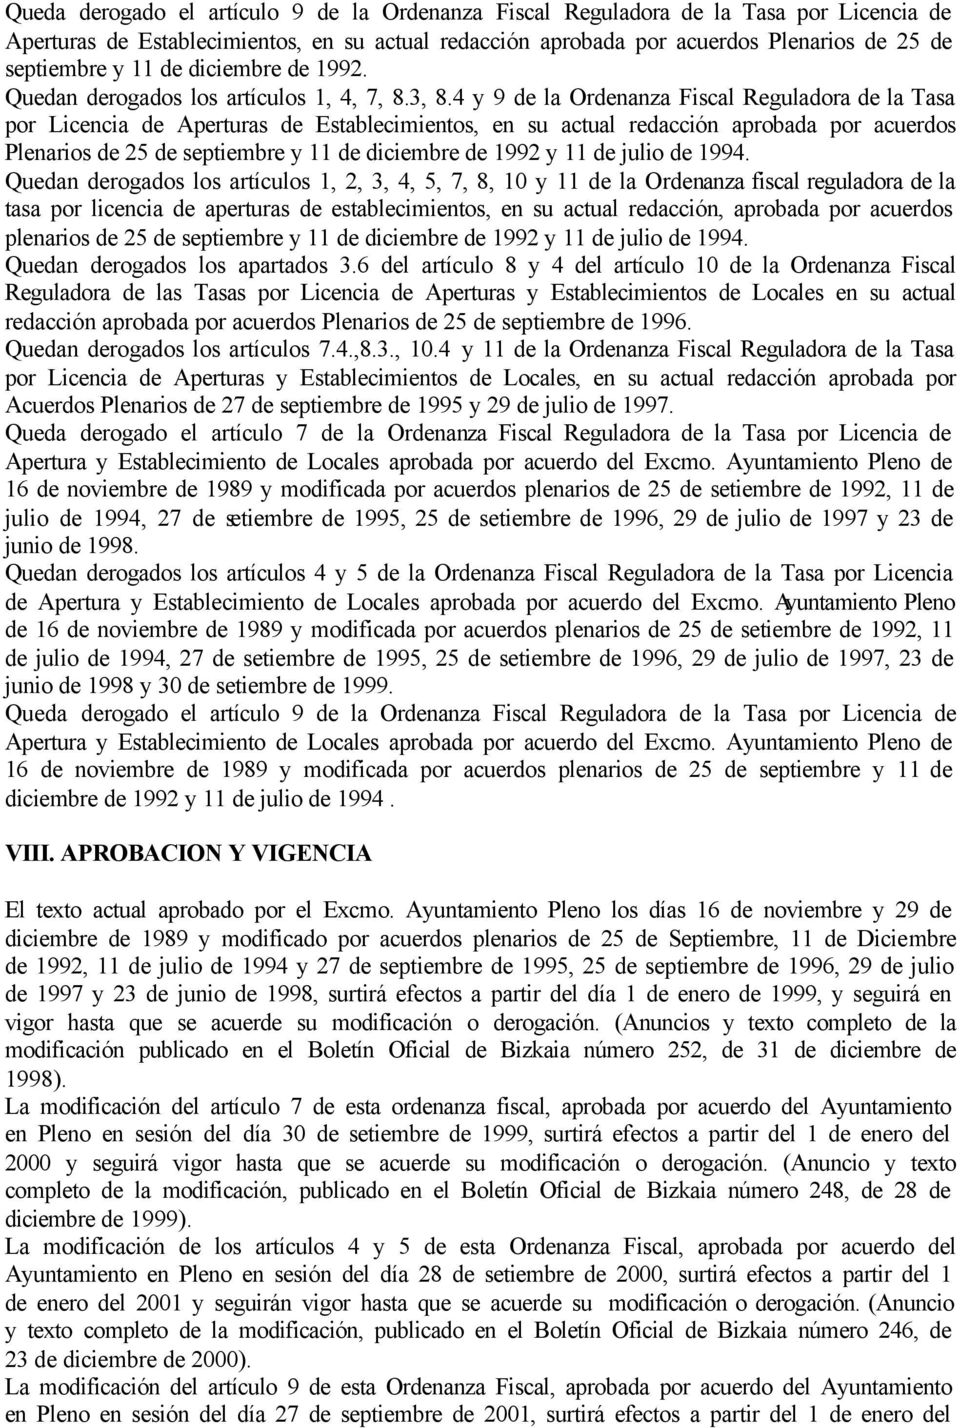 4 y 9 de la Ordenanza Fiscal Reguladora de la Tasa por Licencia de Aperturas de Establecimientos, en su actual redacción aprobada por acuerdos Plenarios de 25 de septiembre y 11 de diciembre de 1992